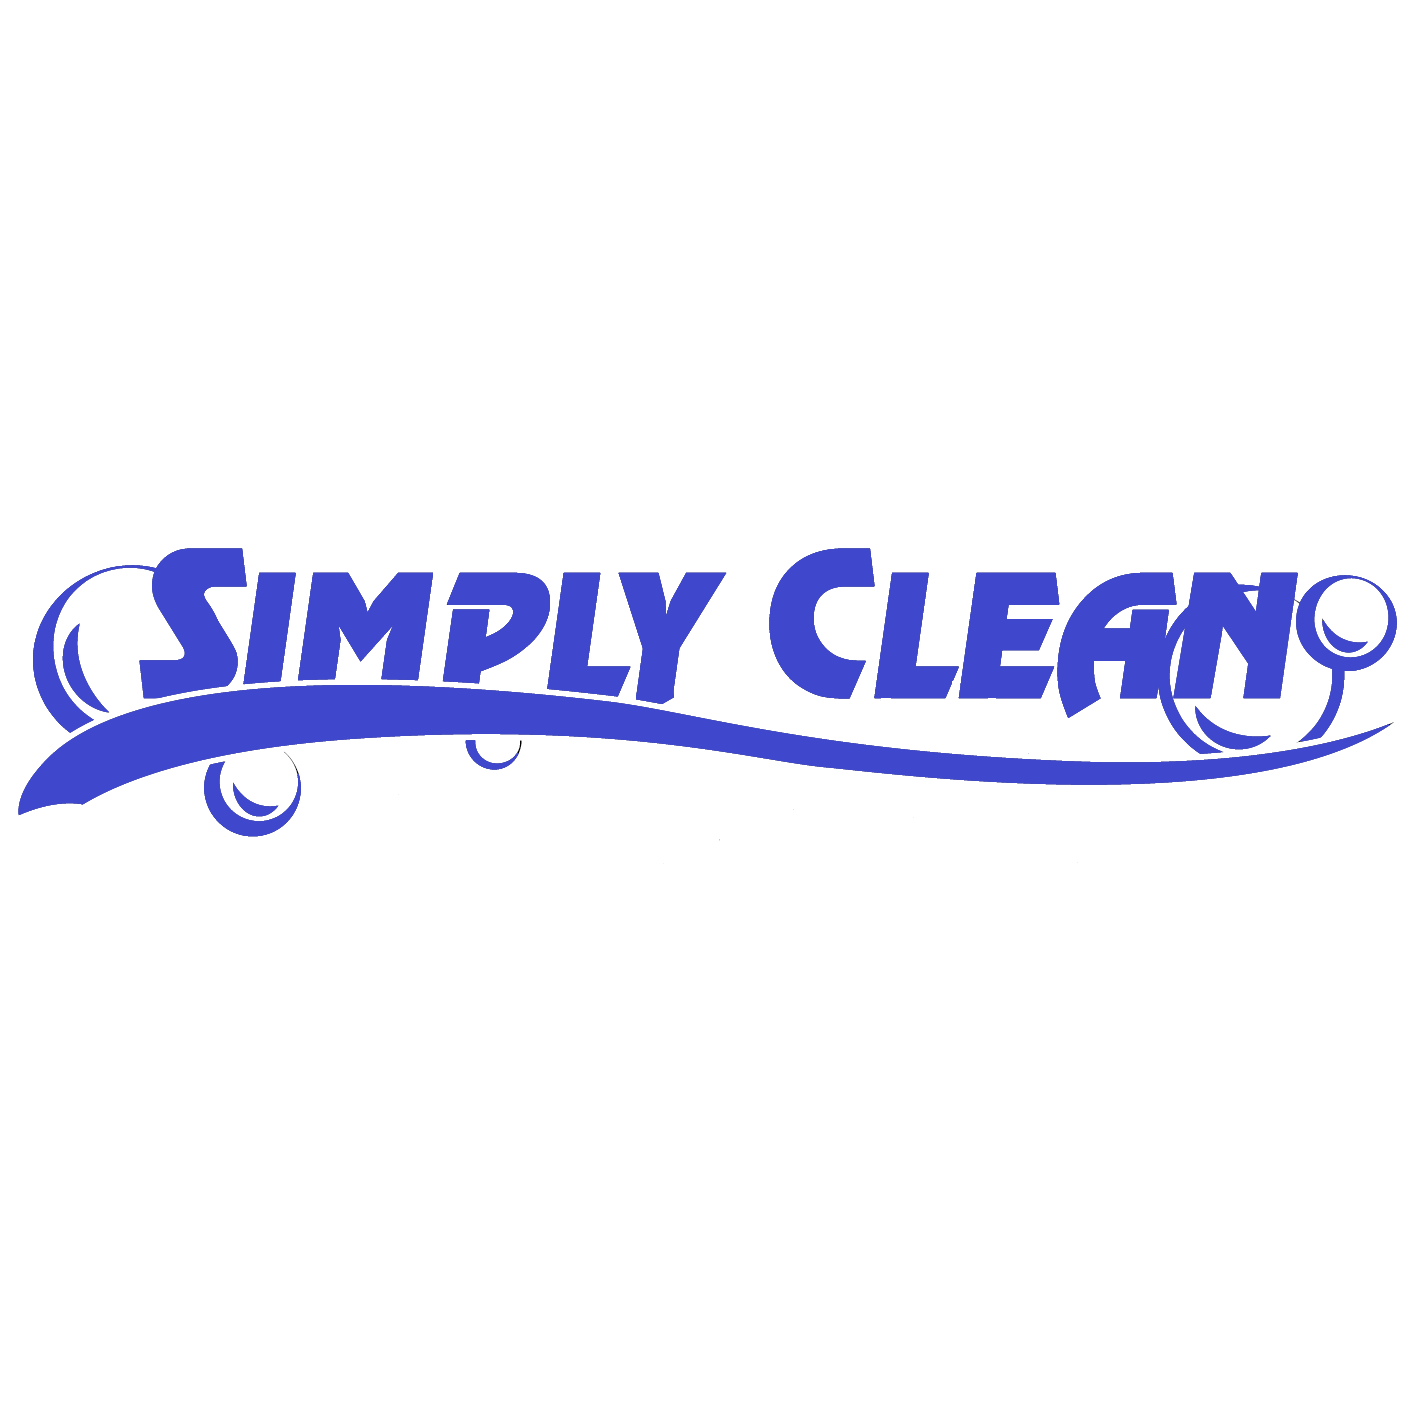 Simply Clean of the Qc Simply Clean of the QC llc Milan (309)797-7740